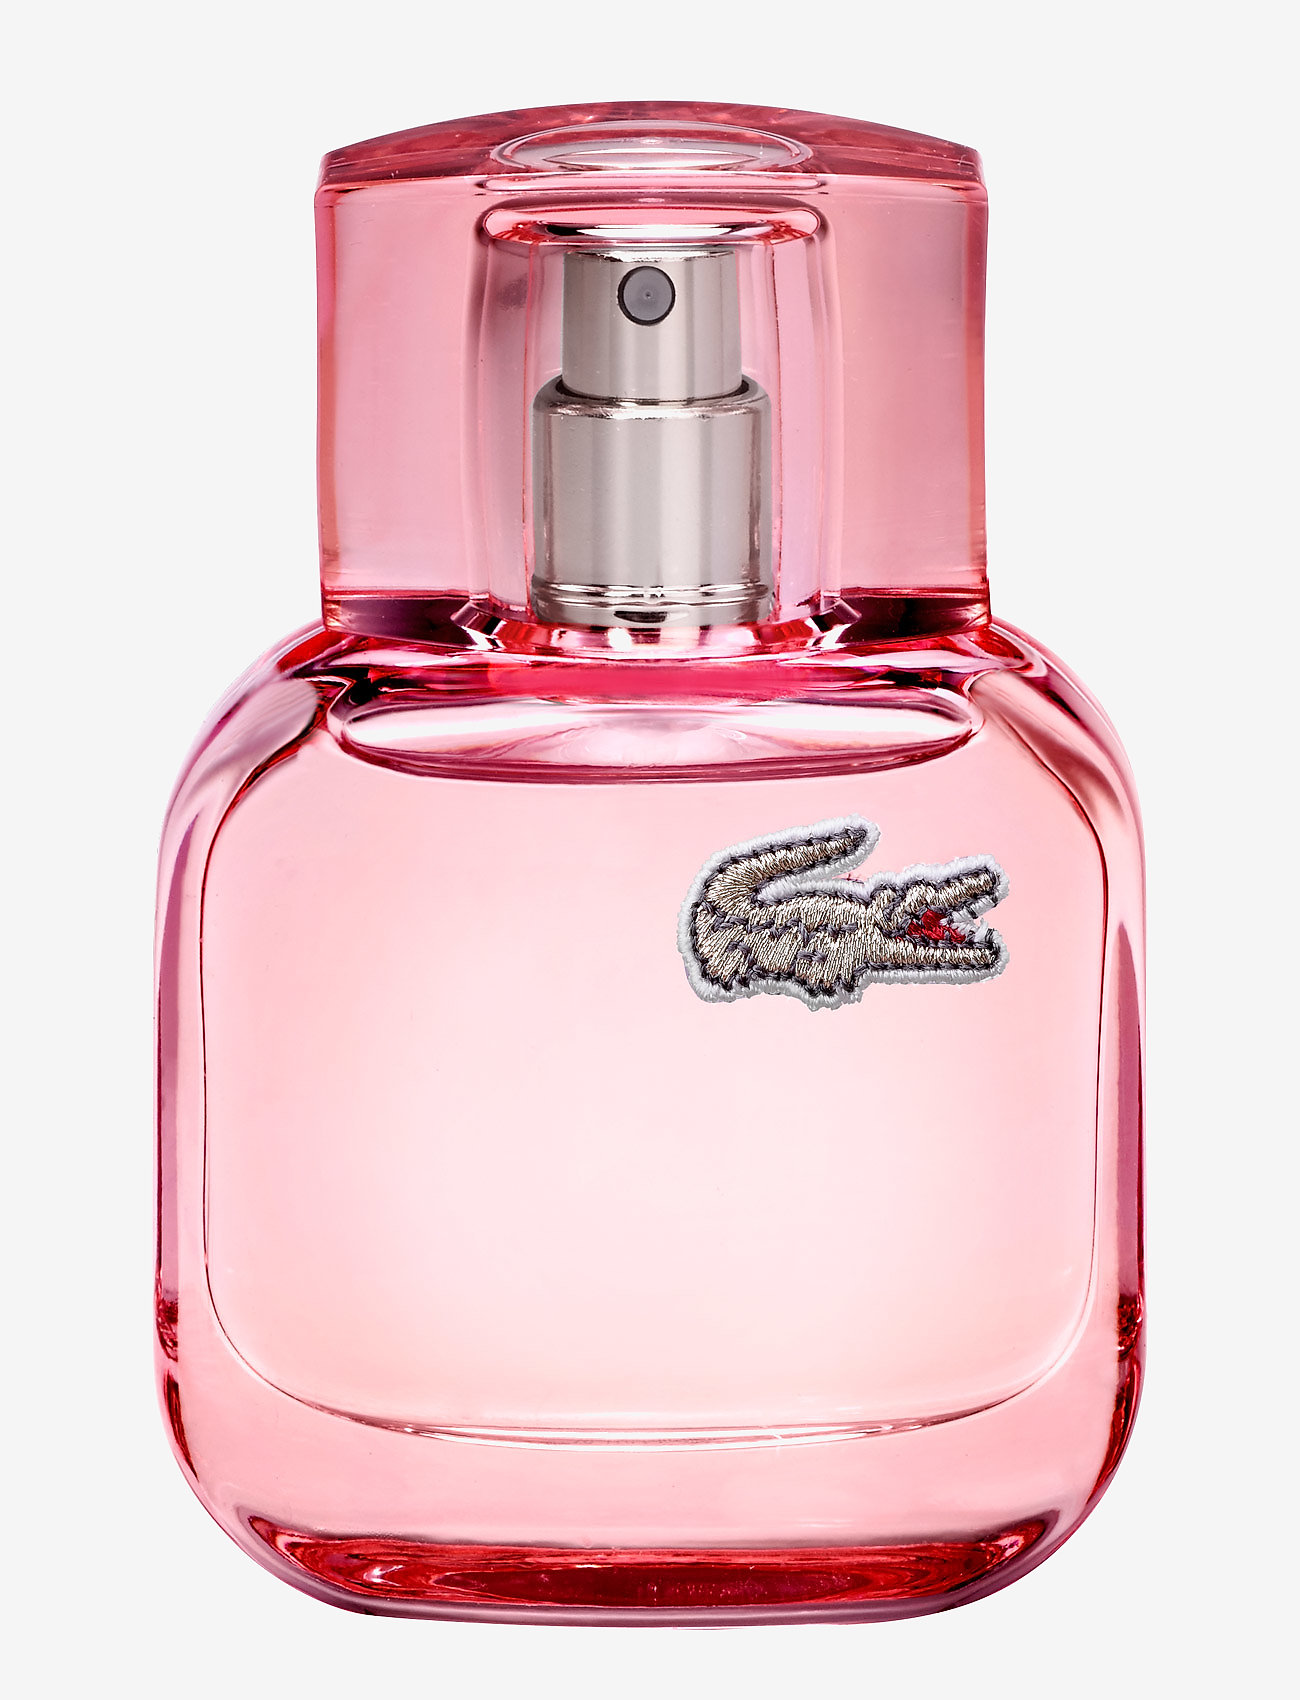 Gods profil Blot Lacoste Fragrance L.12.12 Sparkling Pf Eau Detoilette - Parfume | Boozt.com